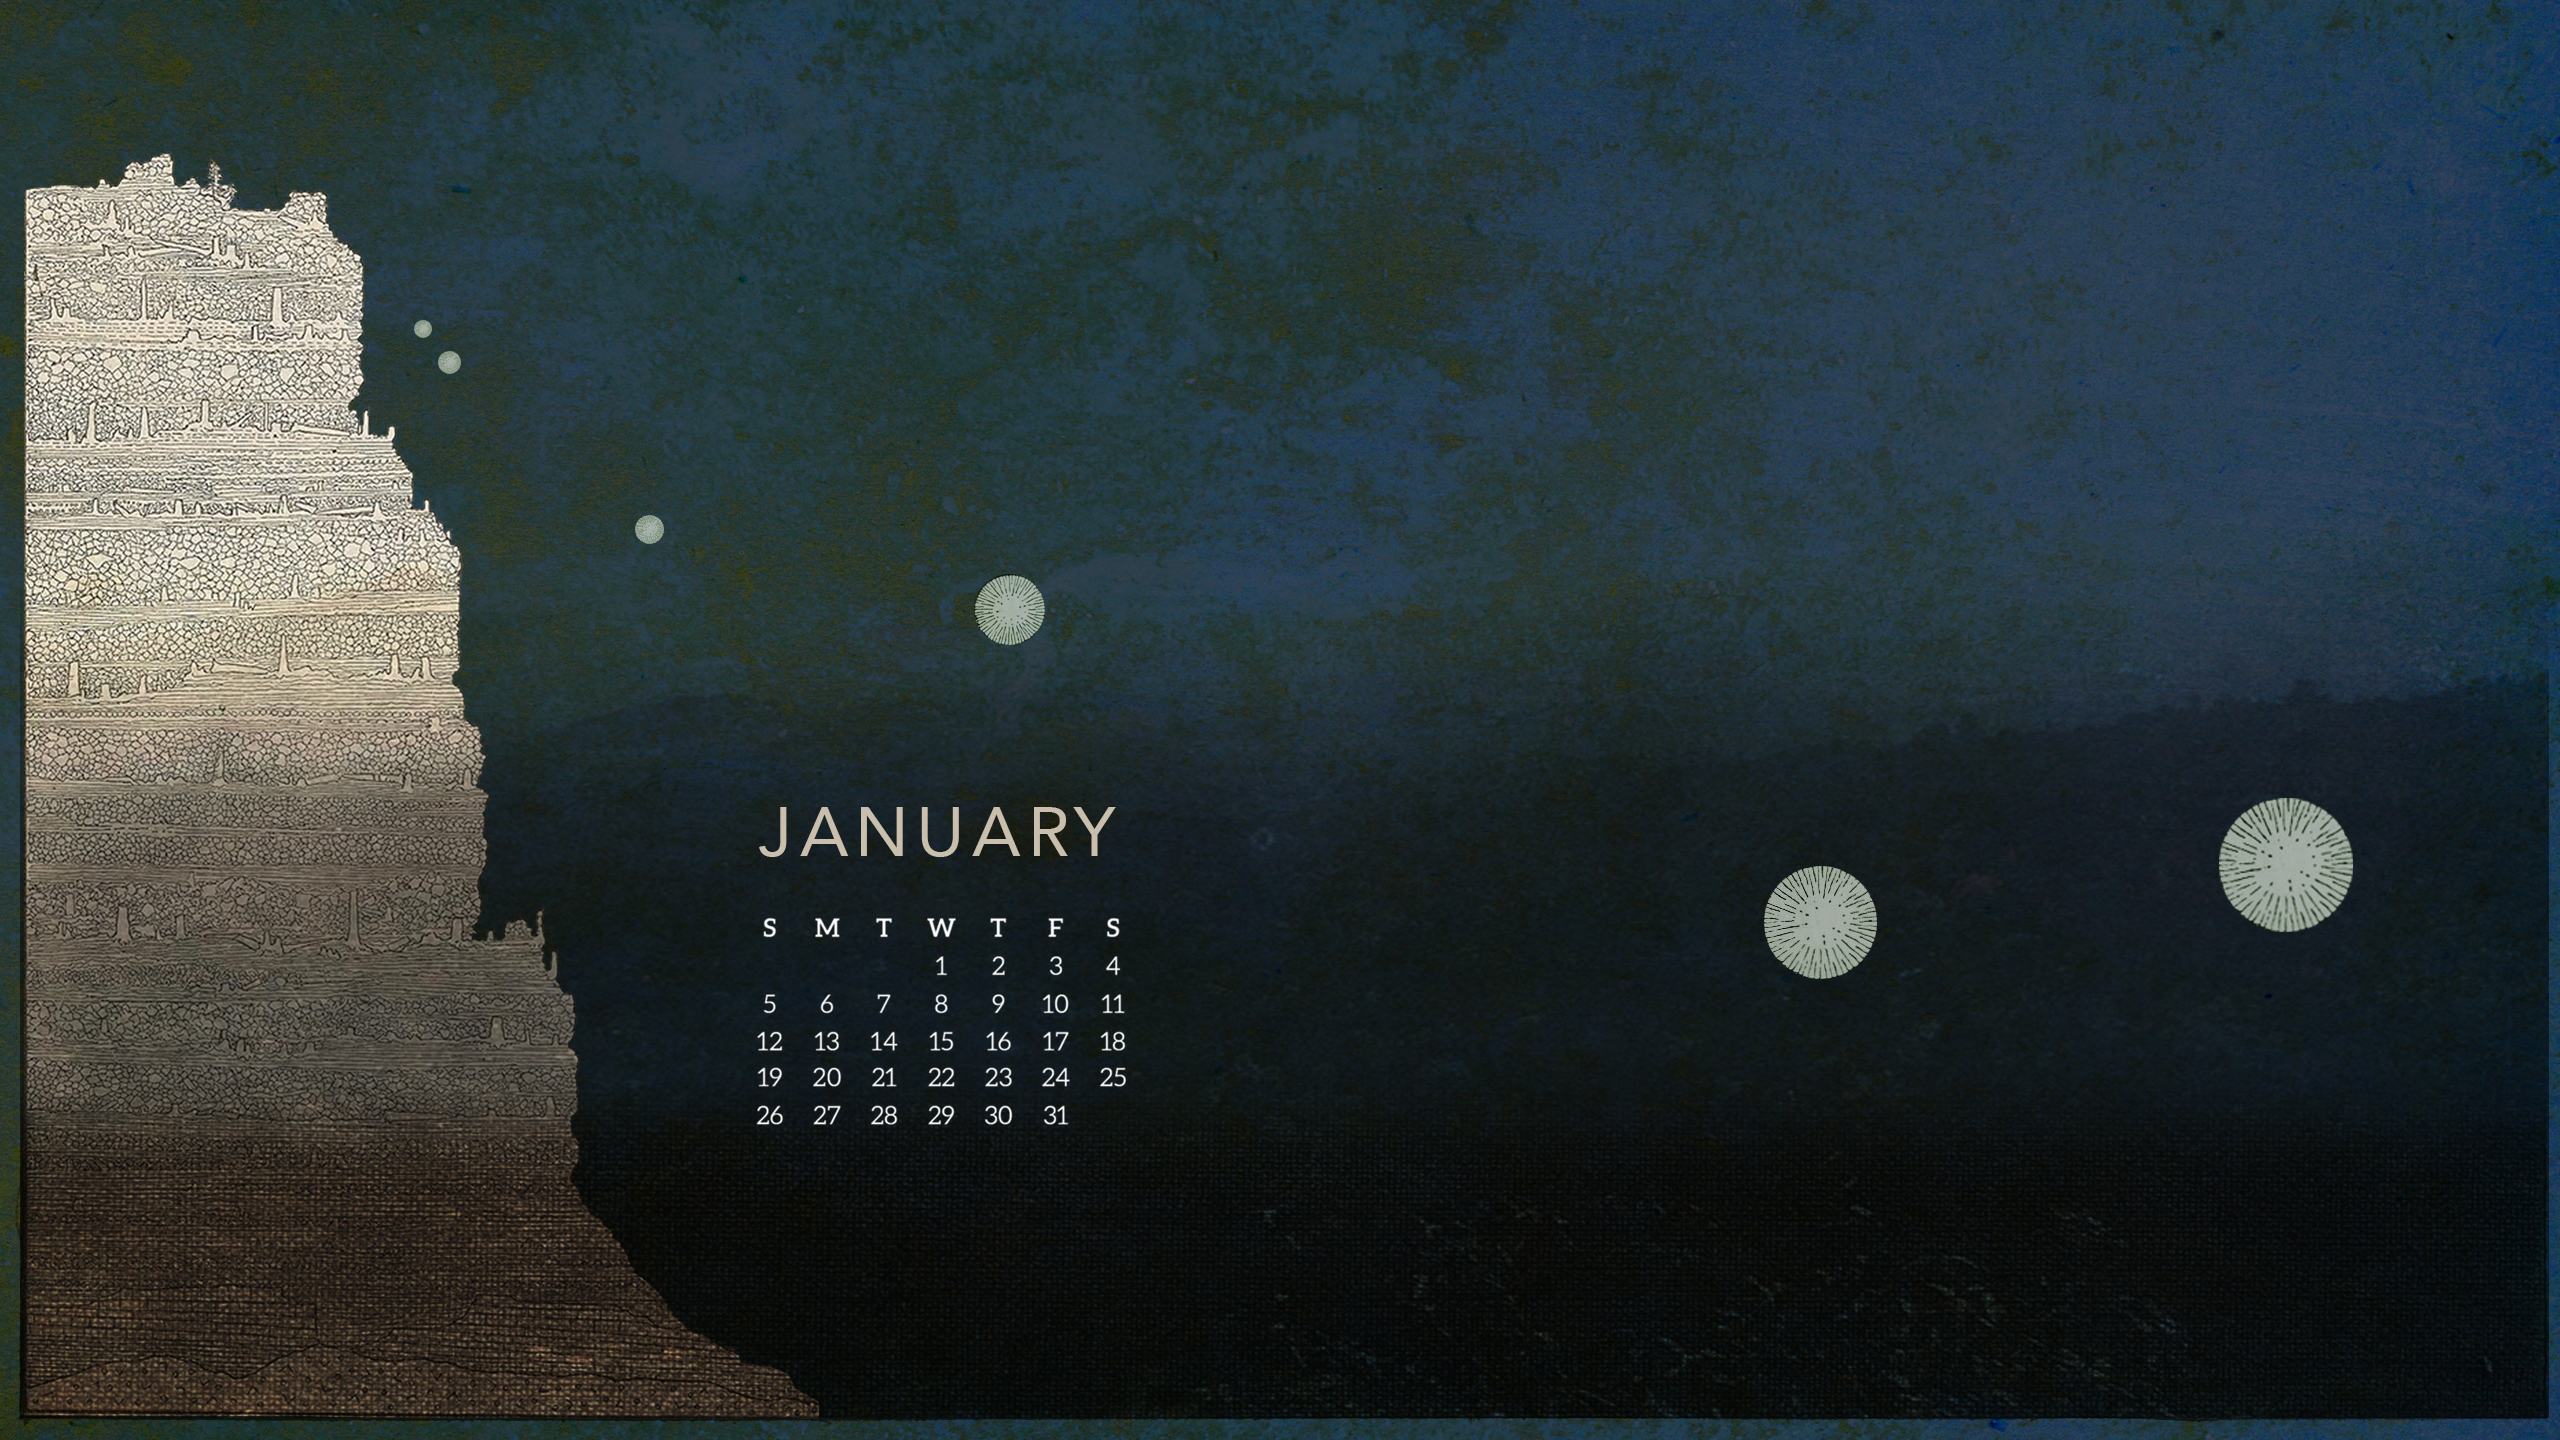 Desktop Wallpaper With Calendar January 2020 - HD Wallpaper 